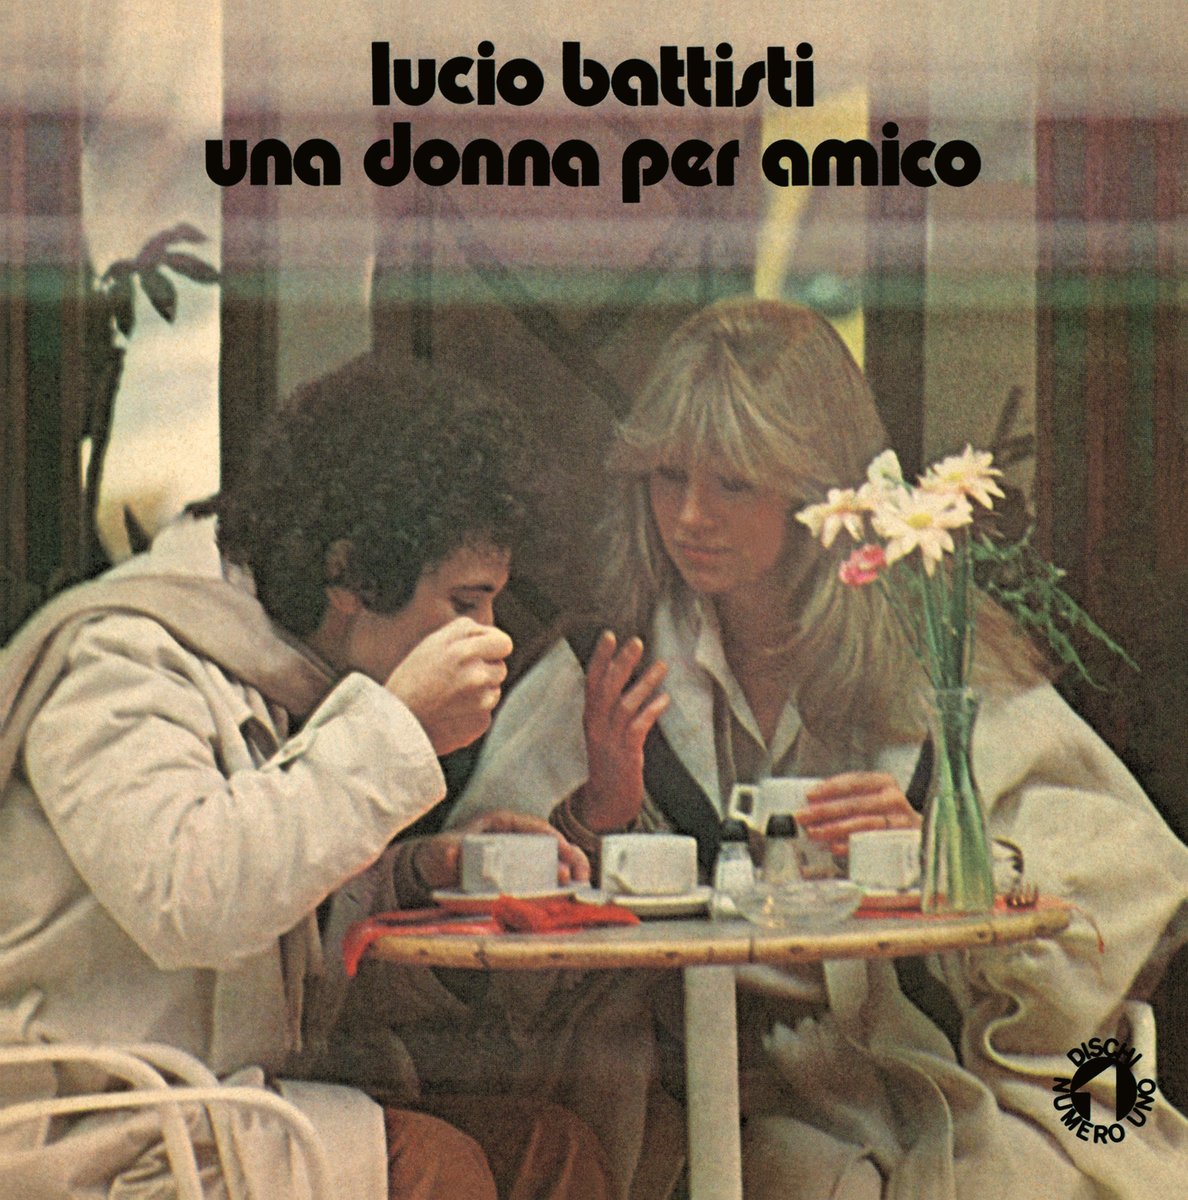 Battisti, Lucio - Una Muchacha Por Amigo/Ningun Dolor (Col. White 7p Vinyl  - Ed. Limitata Numerata)